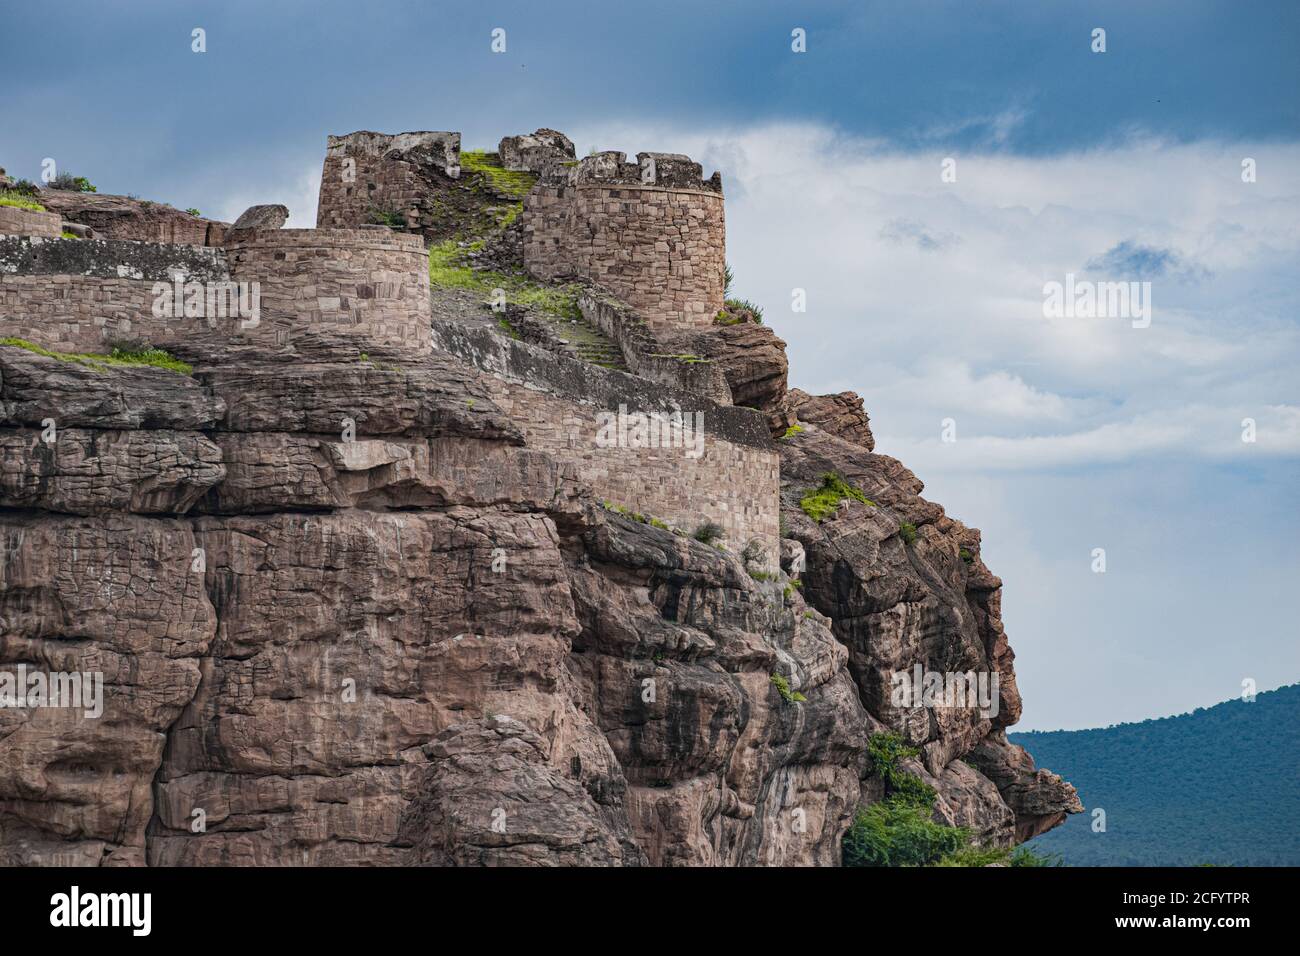 Una bella fortezza costruita in cima alla collina da tippu sulthan a badami. Foto Stock